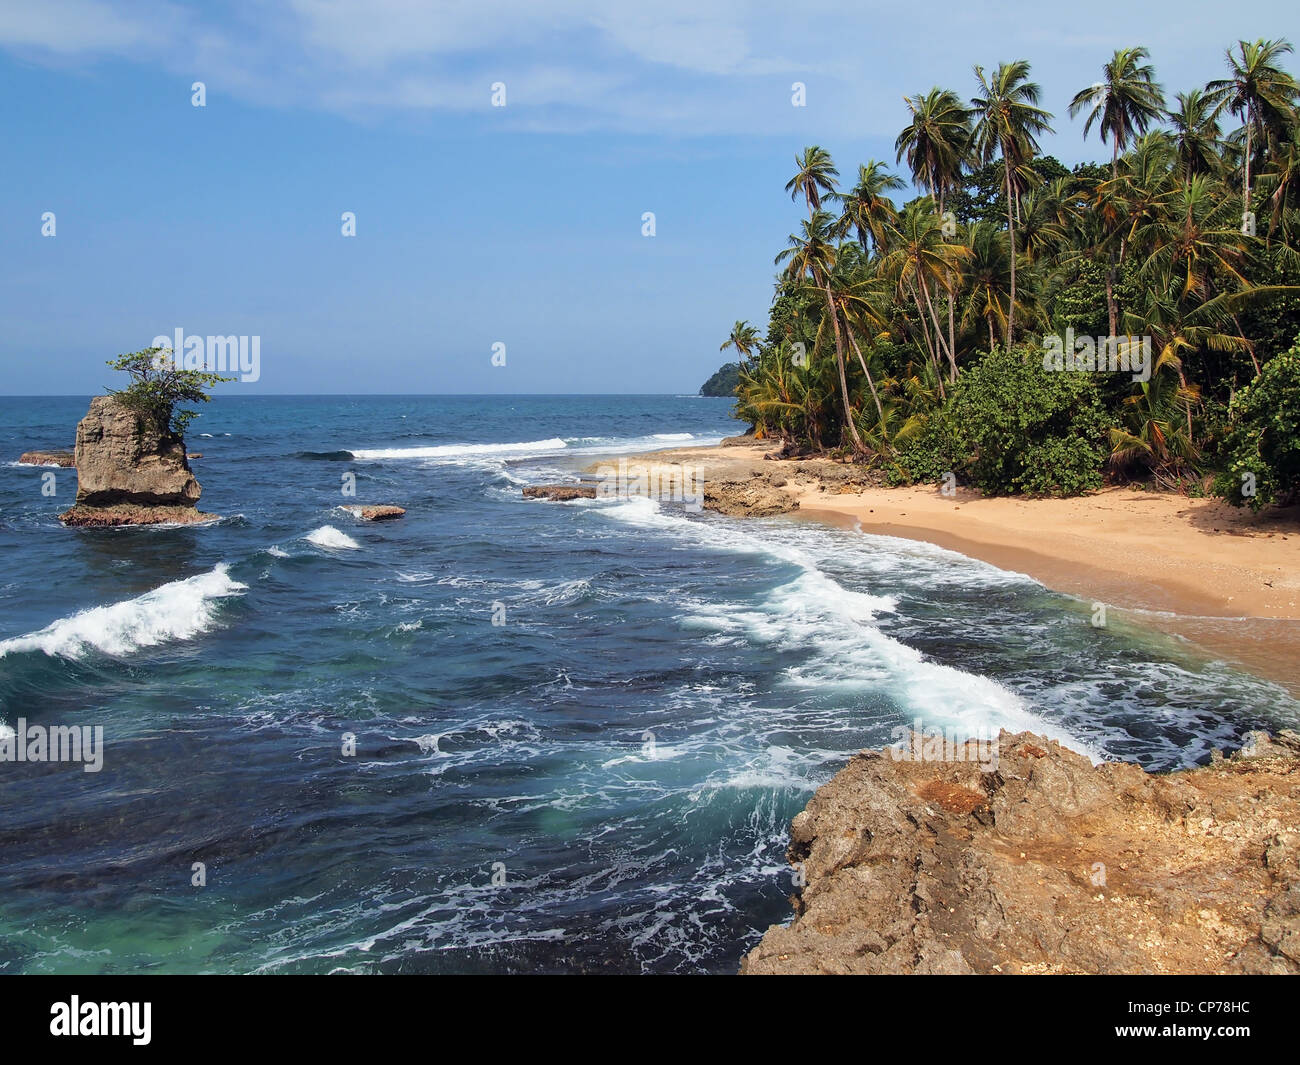 Selvaggia spiaggia tropicale con vegetazione lussureggiante e isolotto roccioso, Costa Rica, Manzanillo, America Centrale Foto Stock